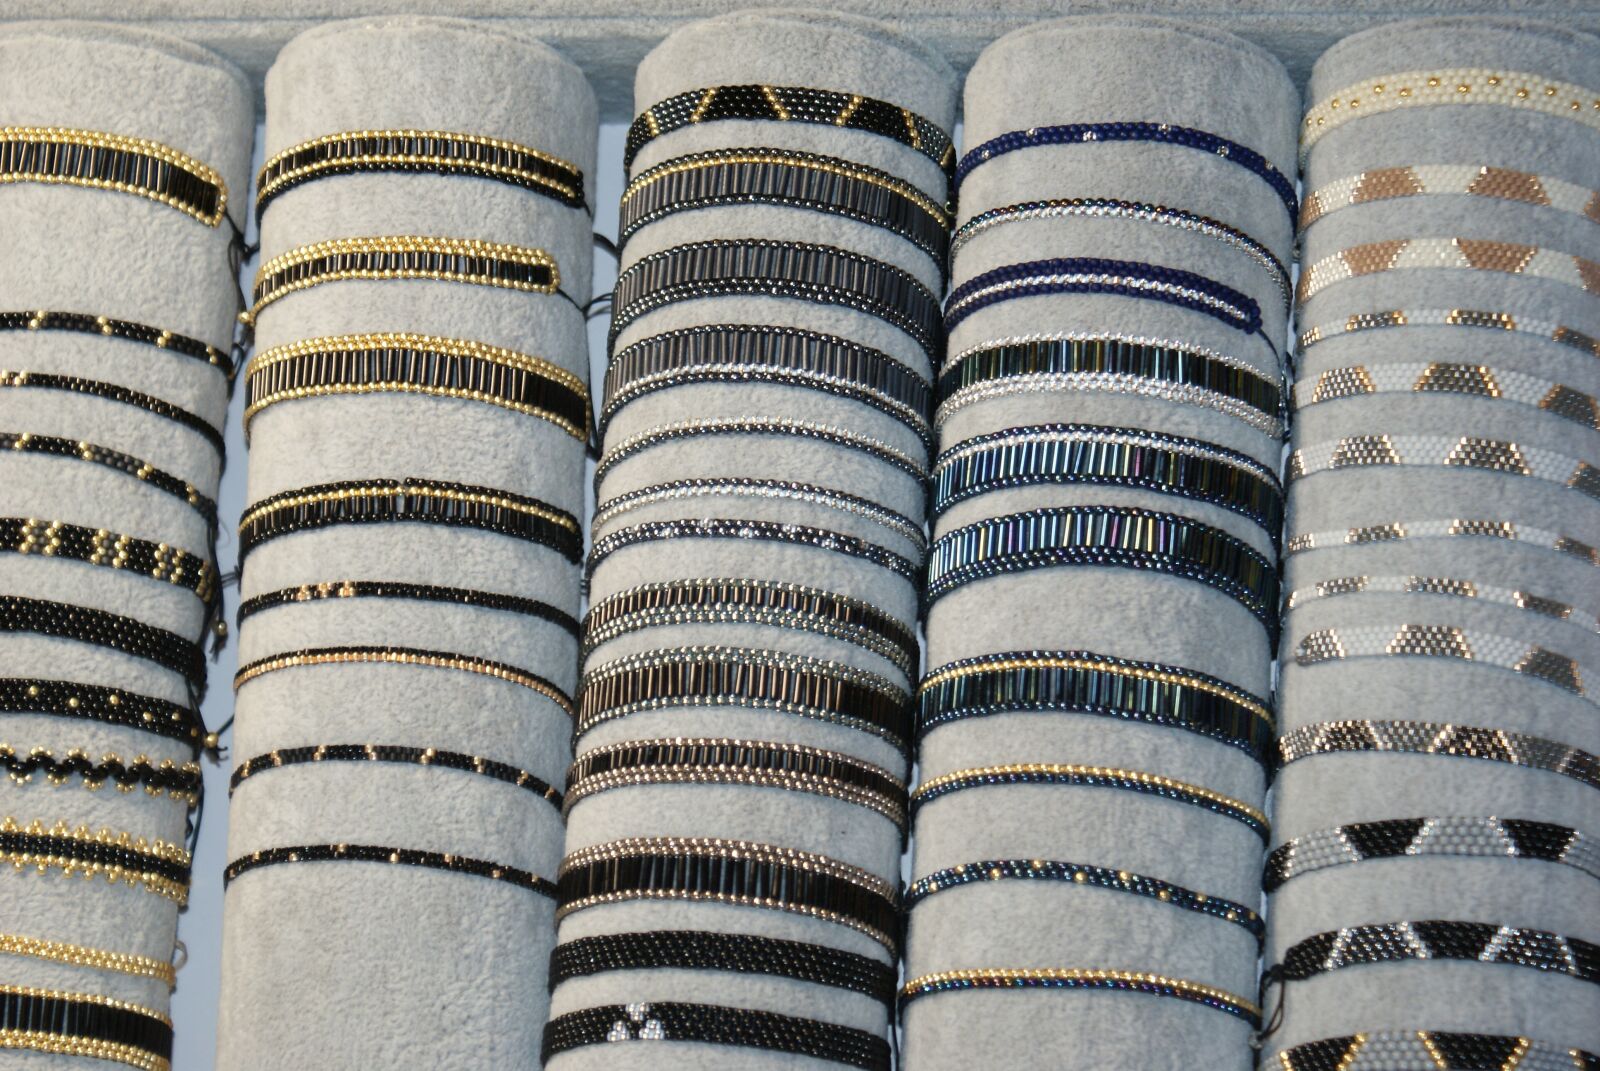 Sony Alpha DSLR-A200 sample photo. Bracelets, ornaments, bracelet photography